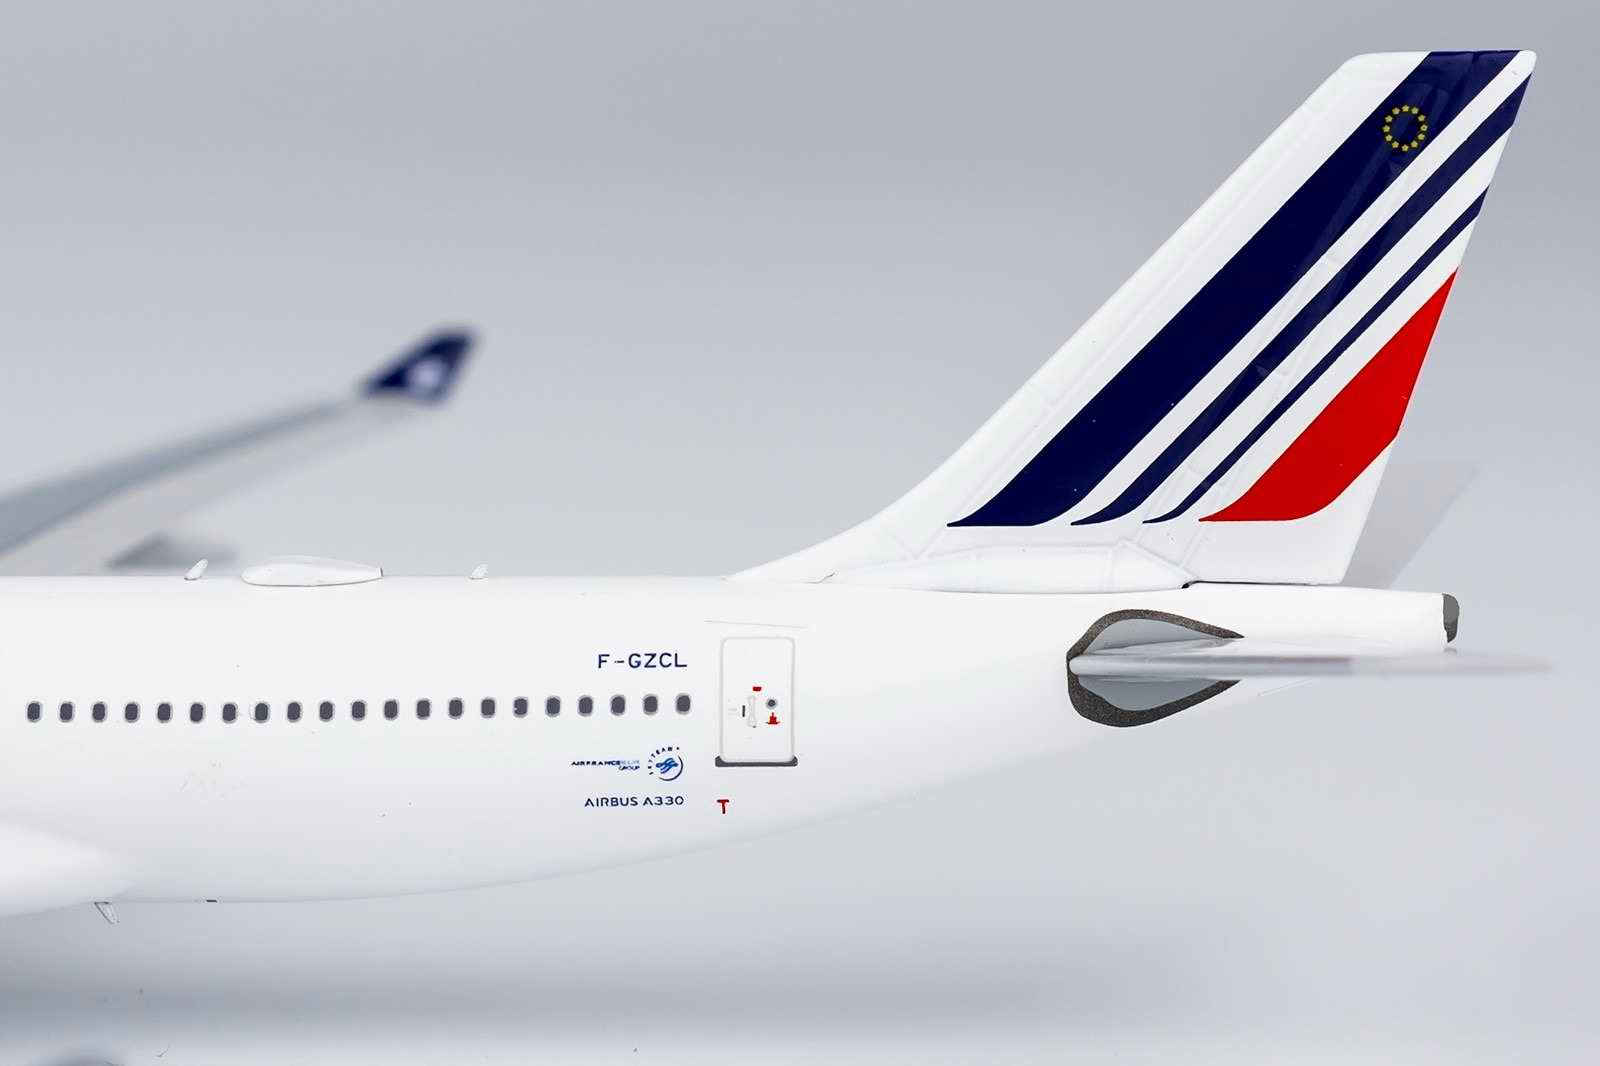 Maquette métal Airbus A330-200 Air France Chenonceaux 1/400 Métal